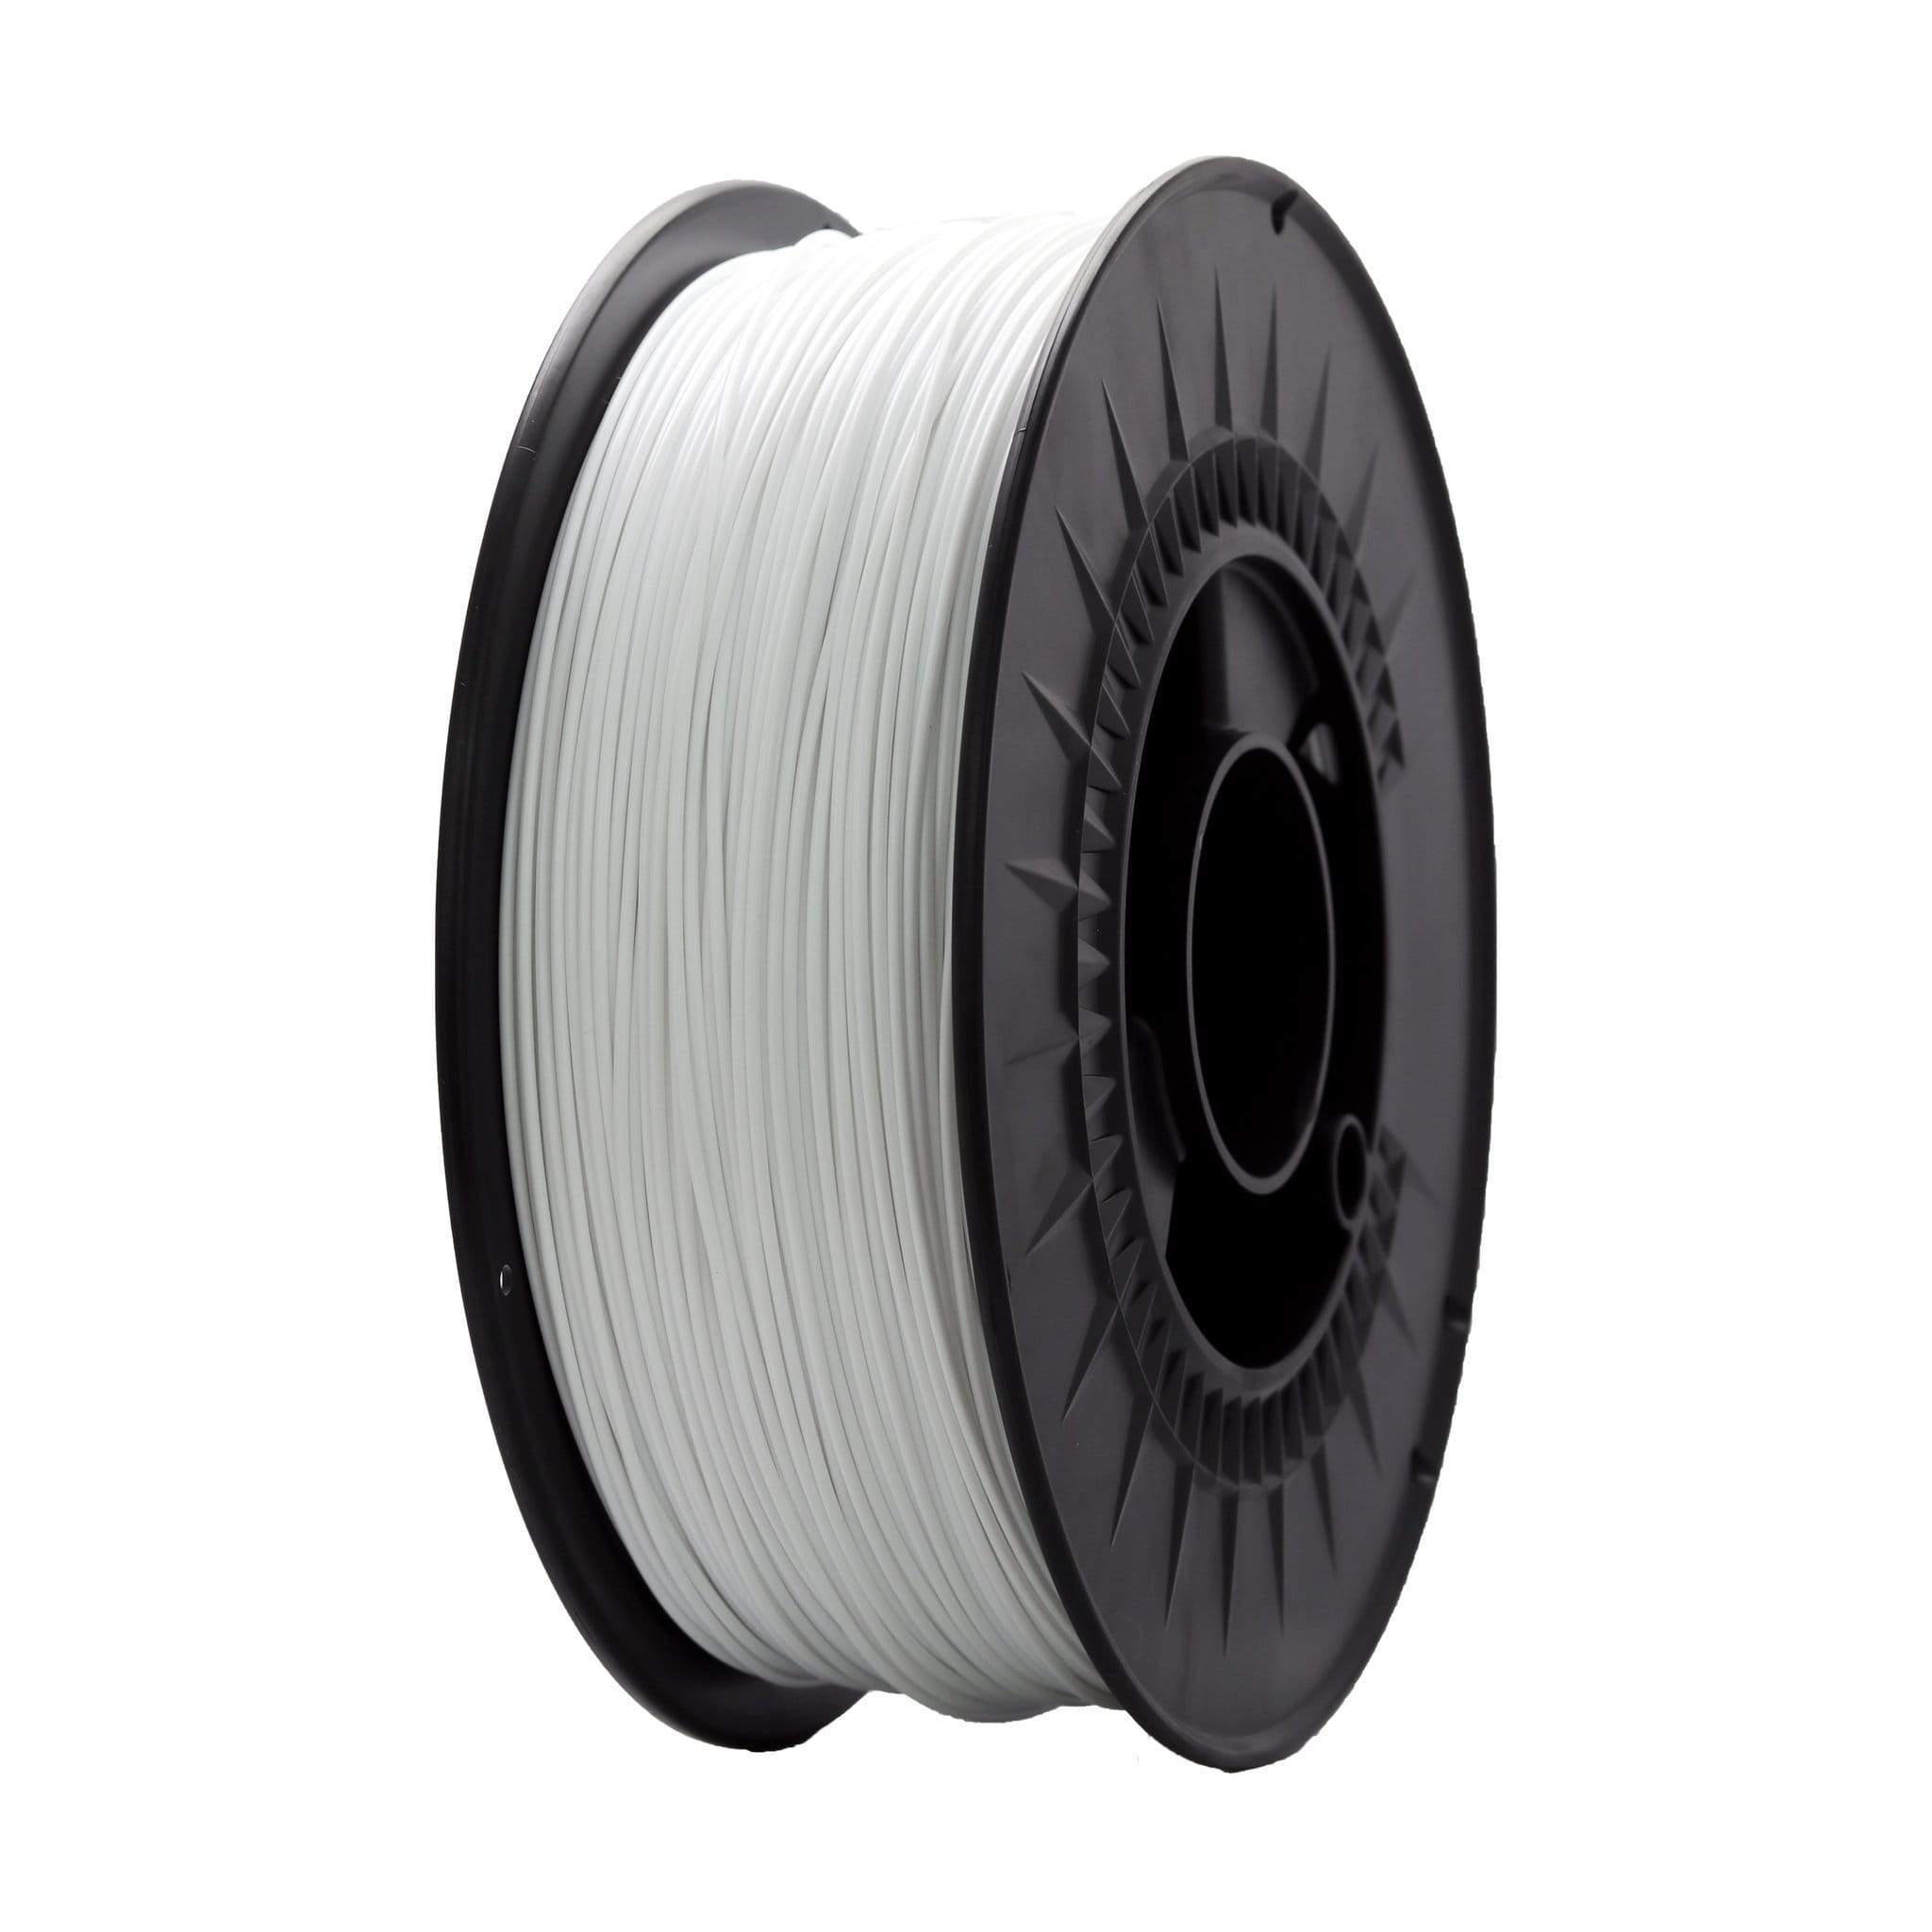  Filament/PLA] $12.79 Enotepad (Sunlu) white PLA Plus or